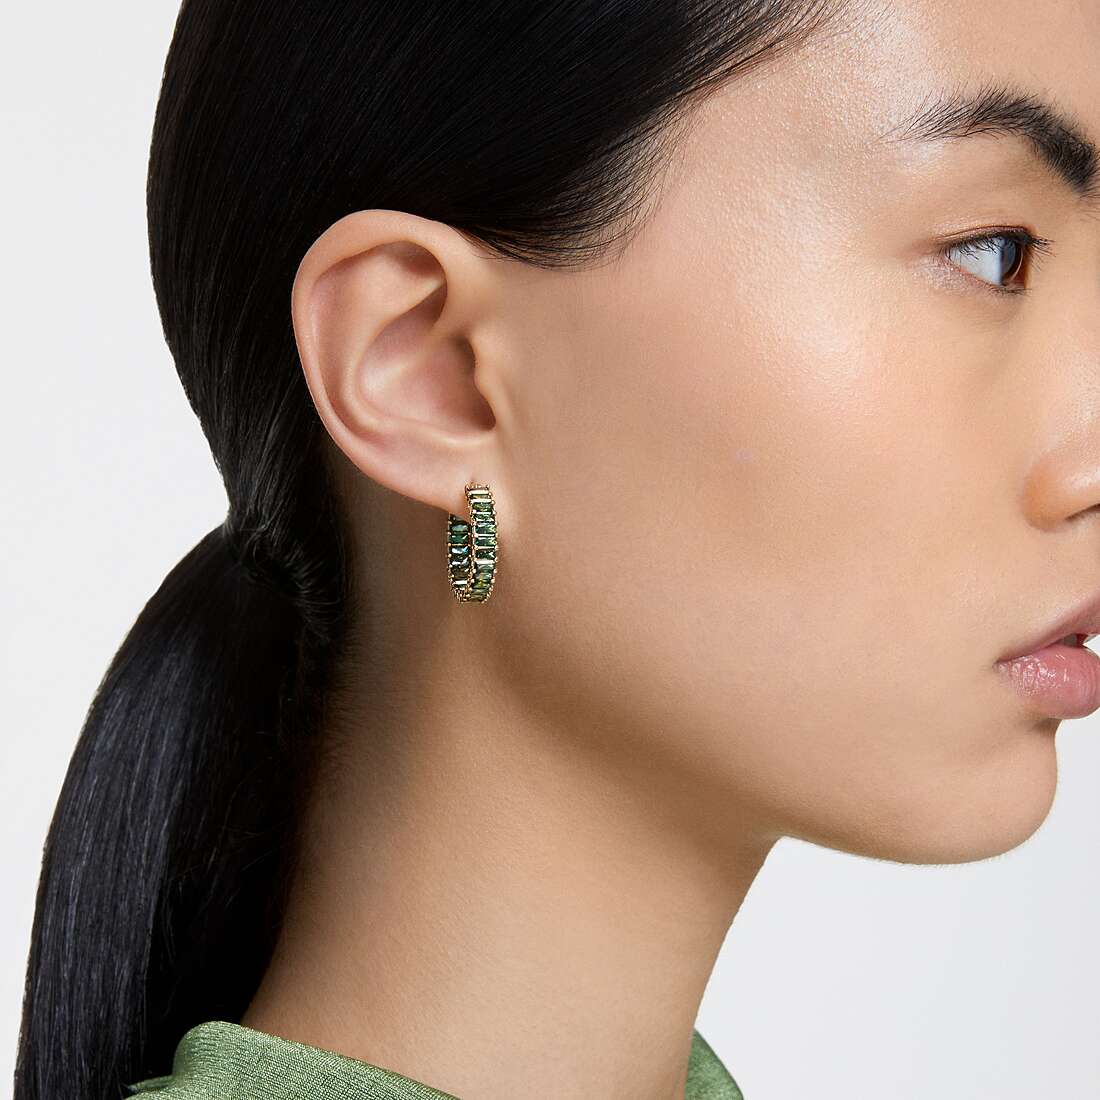 Swarovski earrings woman 5658651 wearing